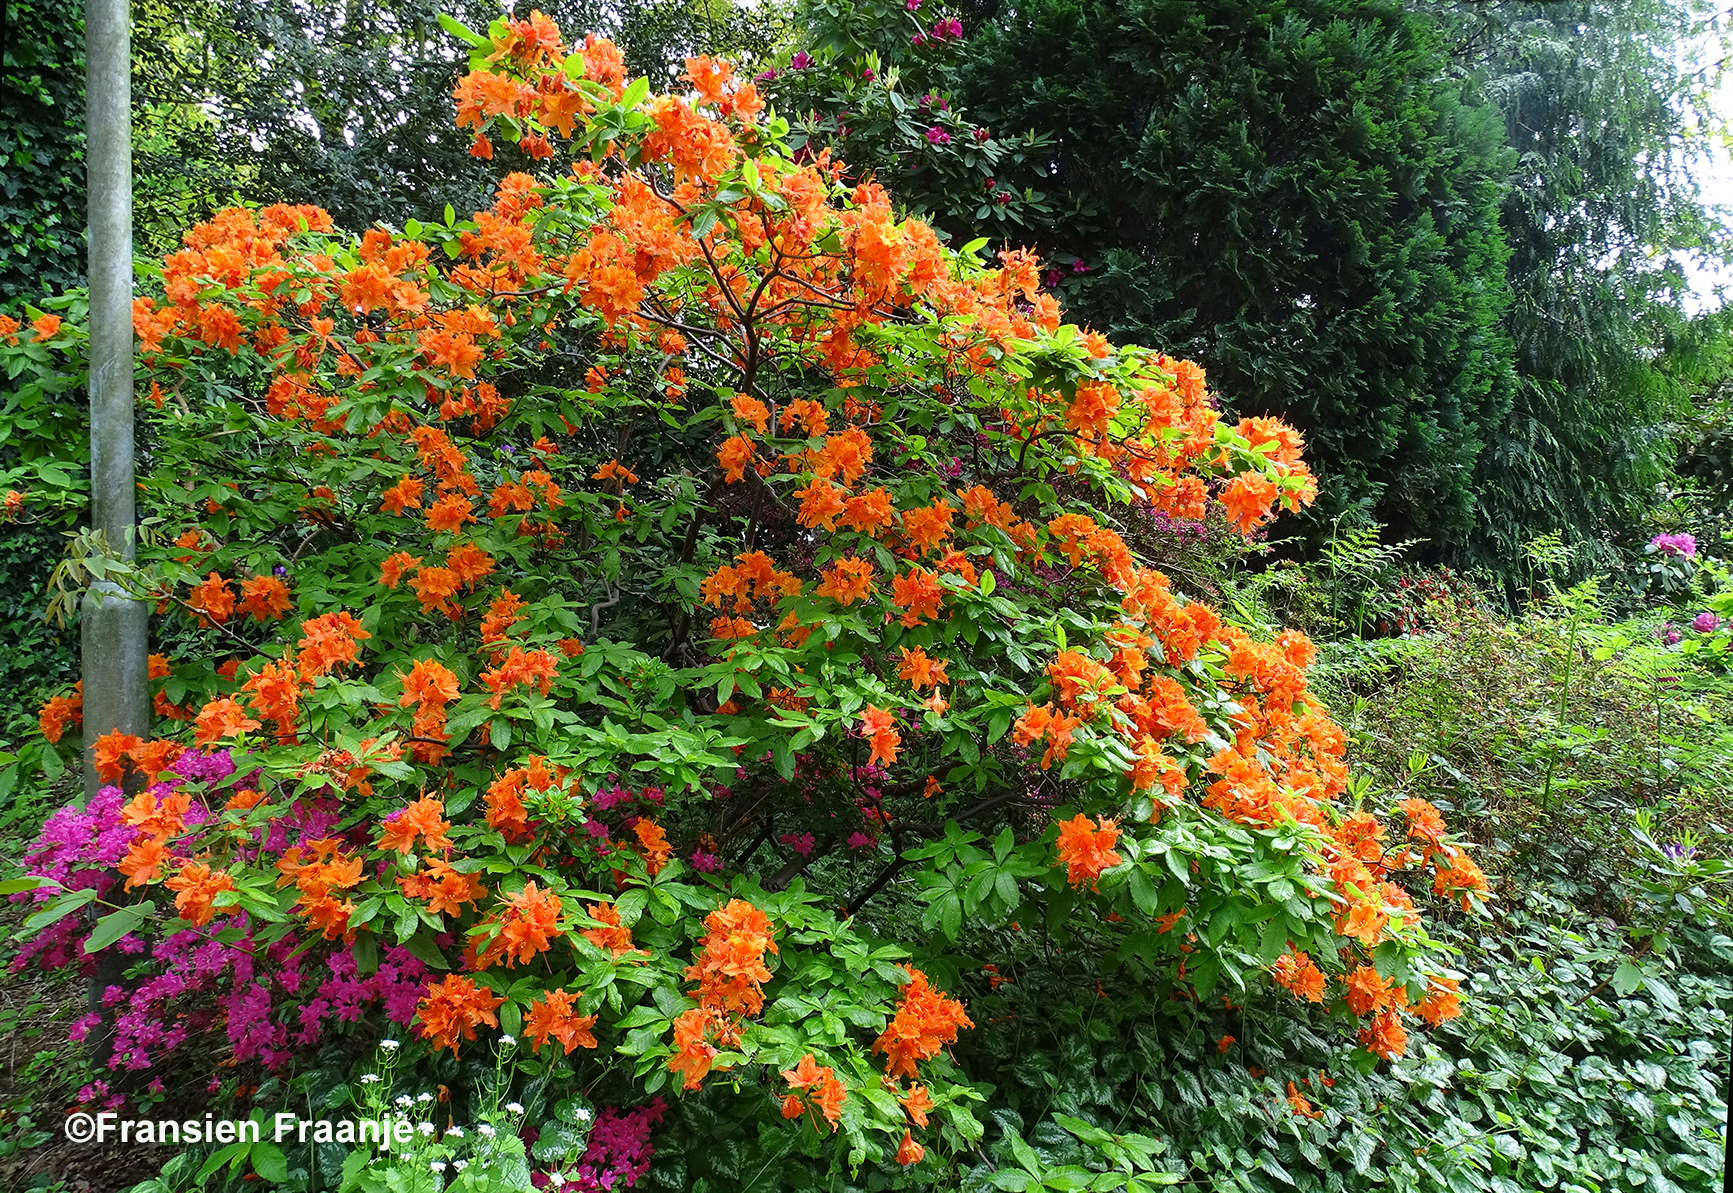 Deze prachtige oranje bloemen passen misschien heel goed bij een Koningsdag - Foto: ©Fransien Fraanje